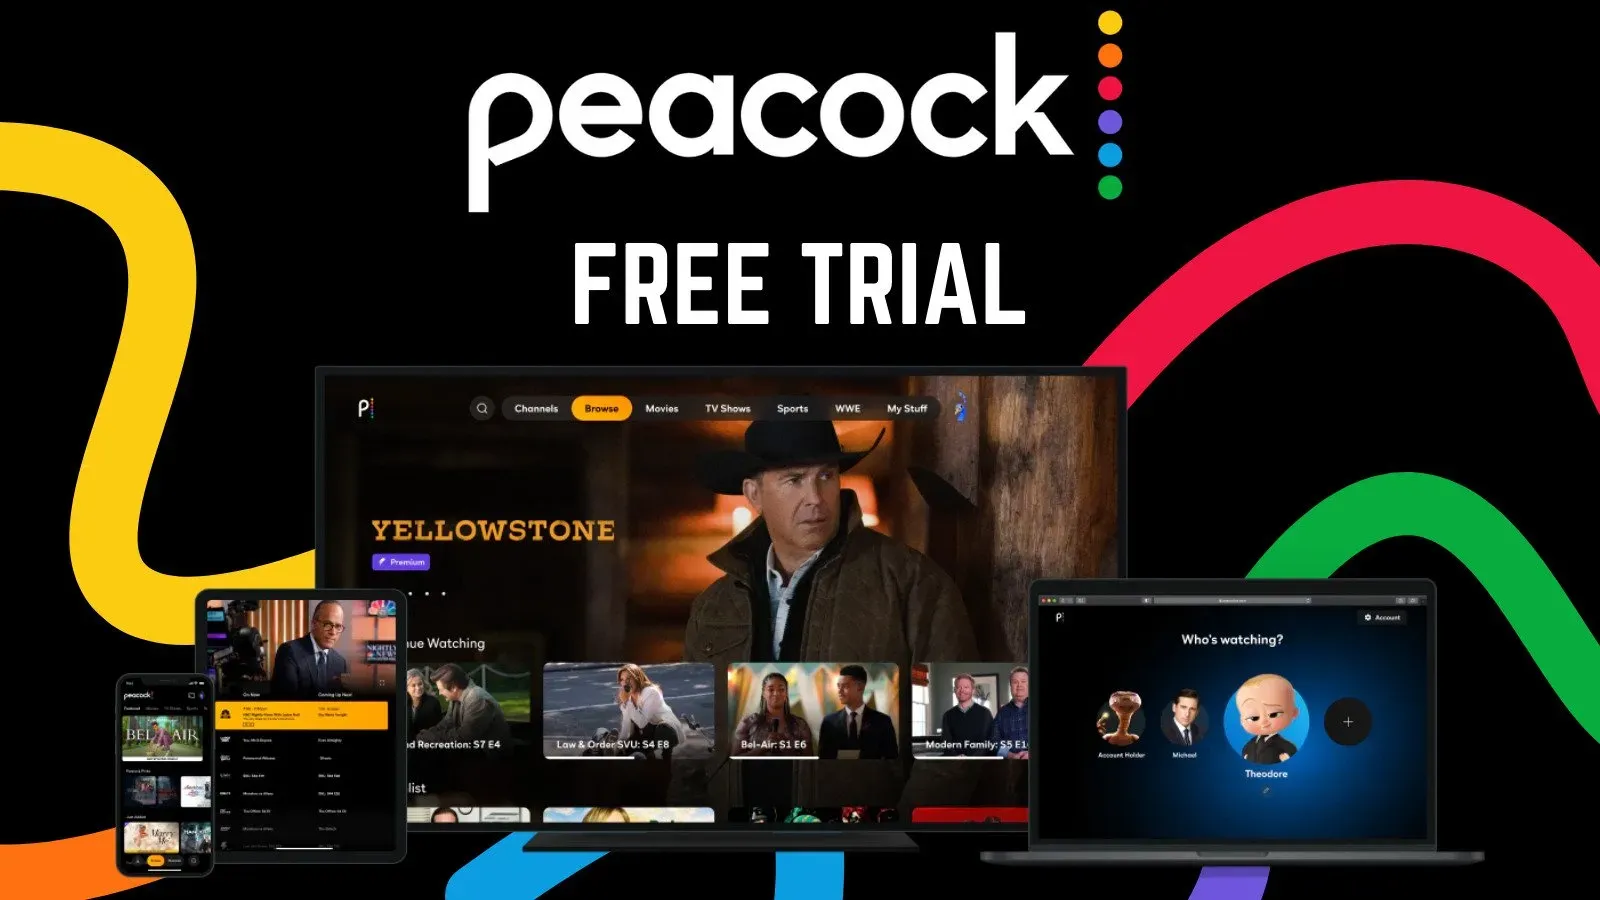 Vad är Peacock Free Trial?